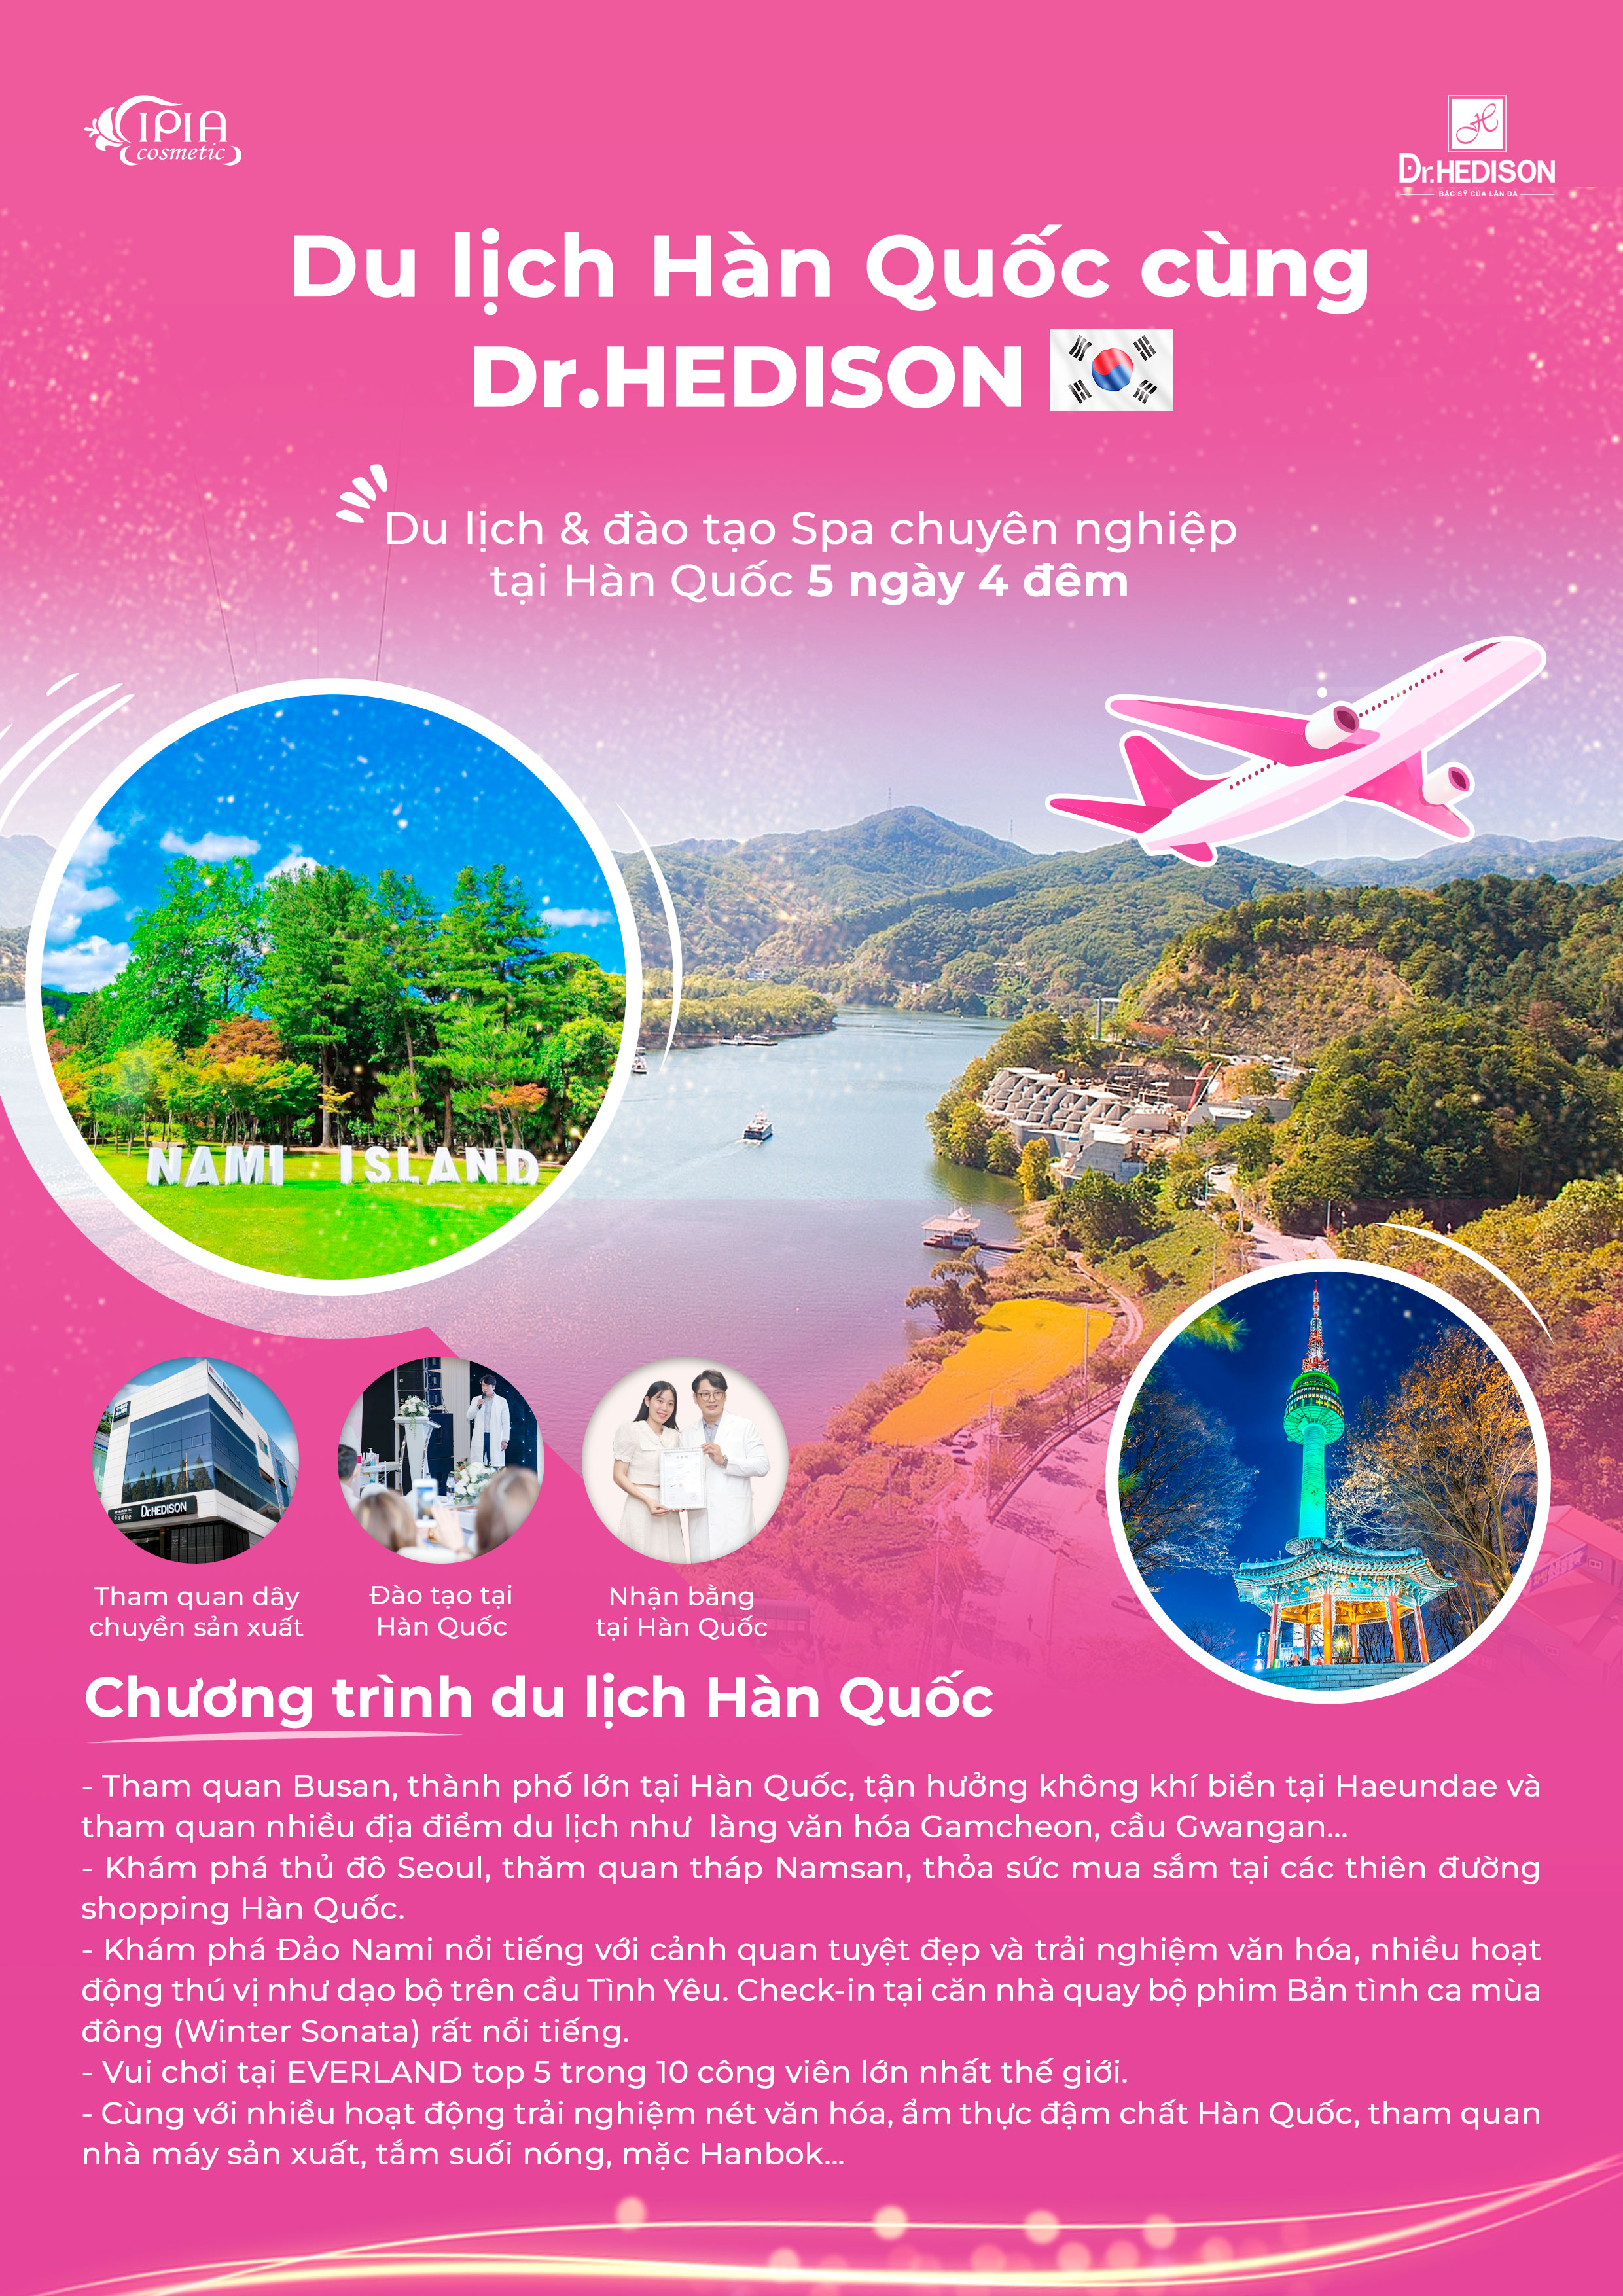 Chương trình du lịch Hàn Quốc Dr.HEDISON